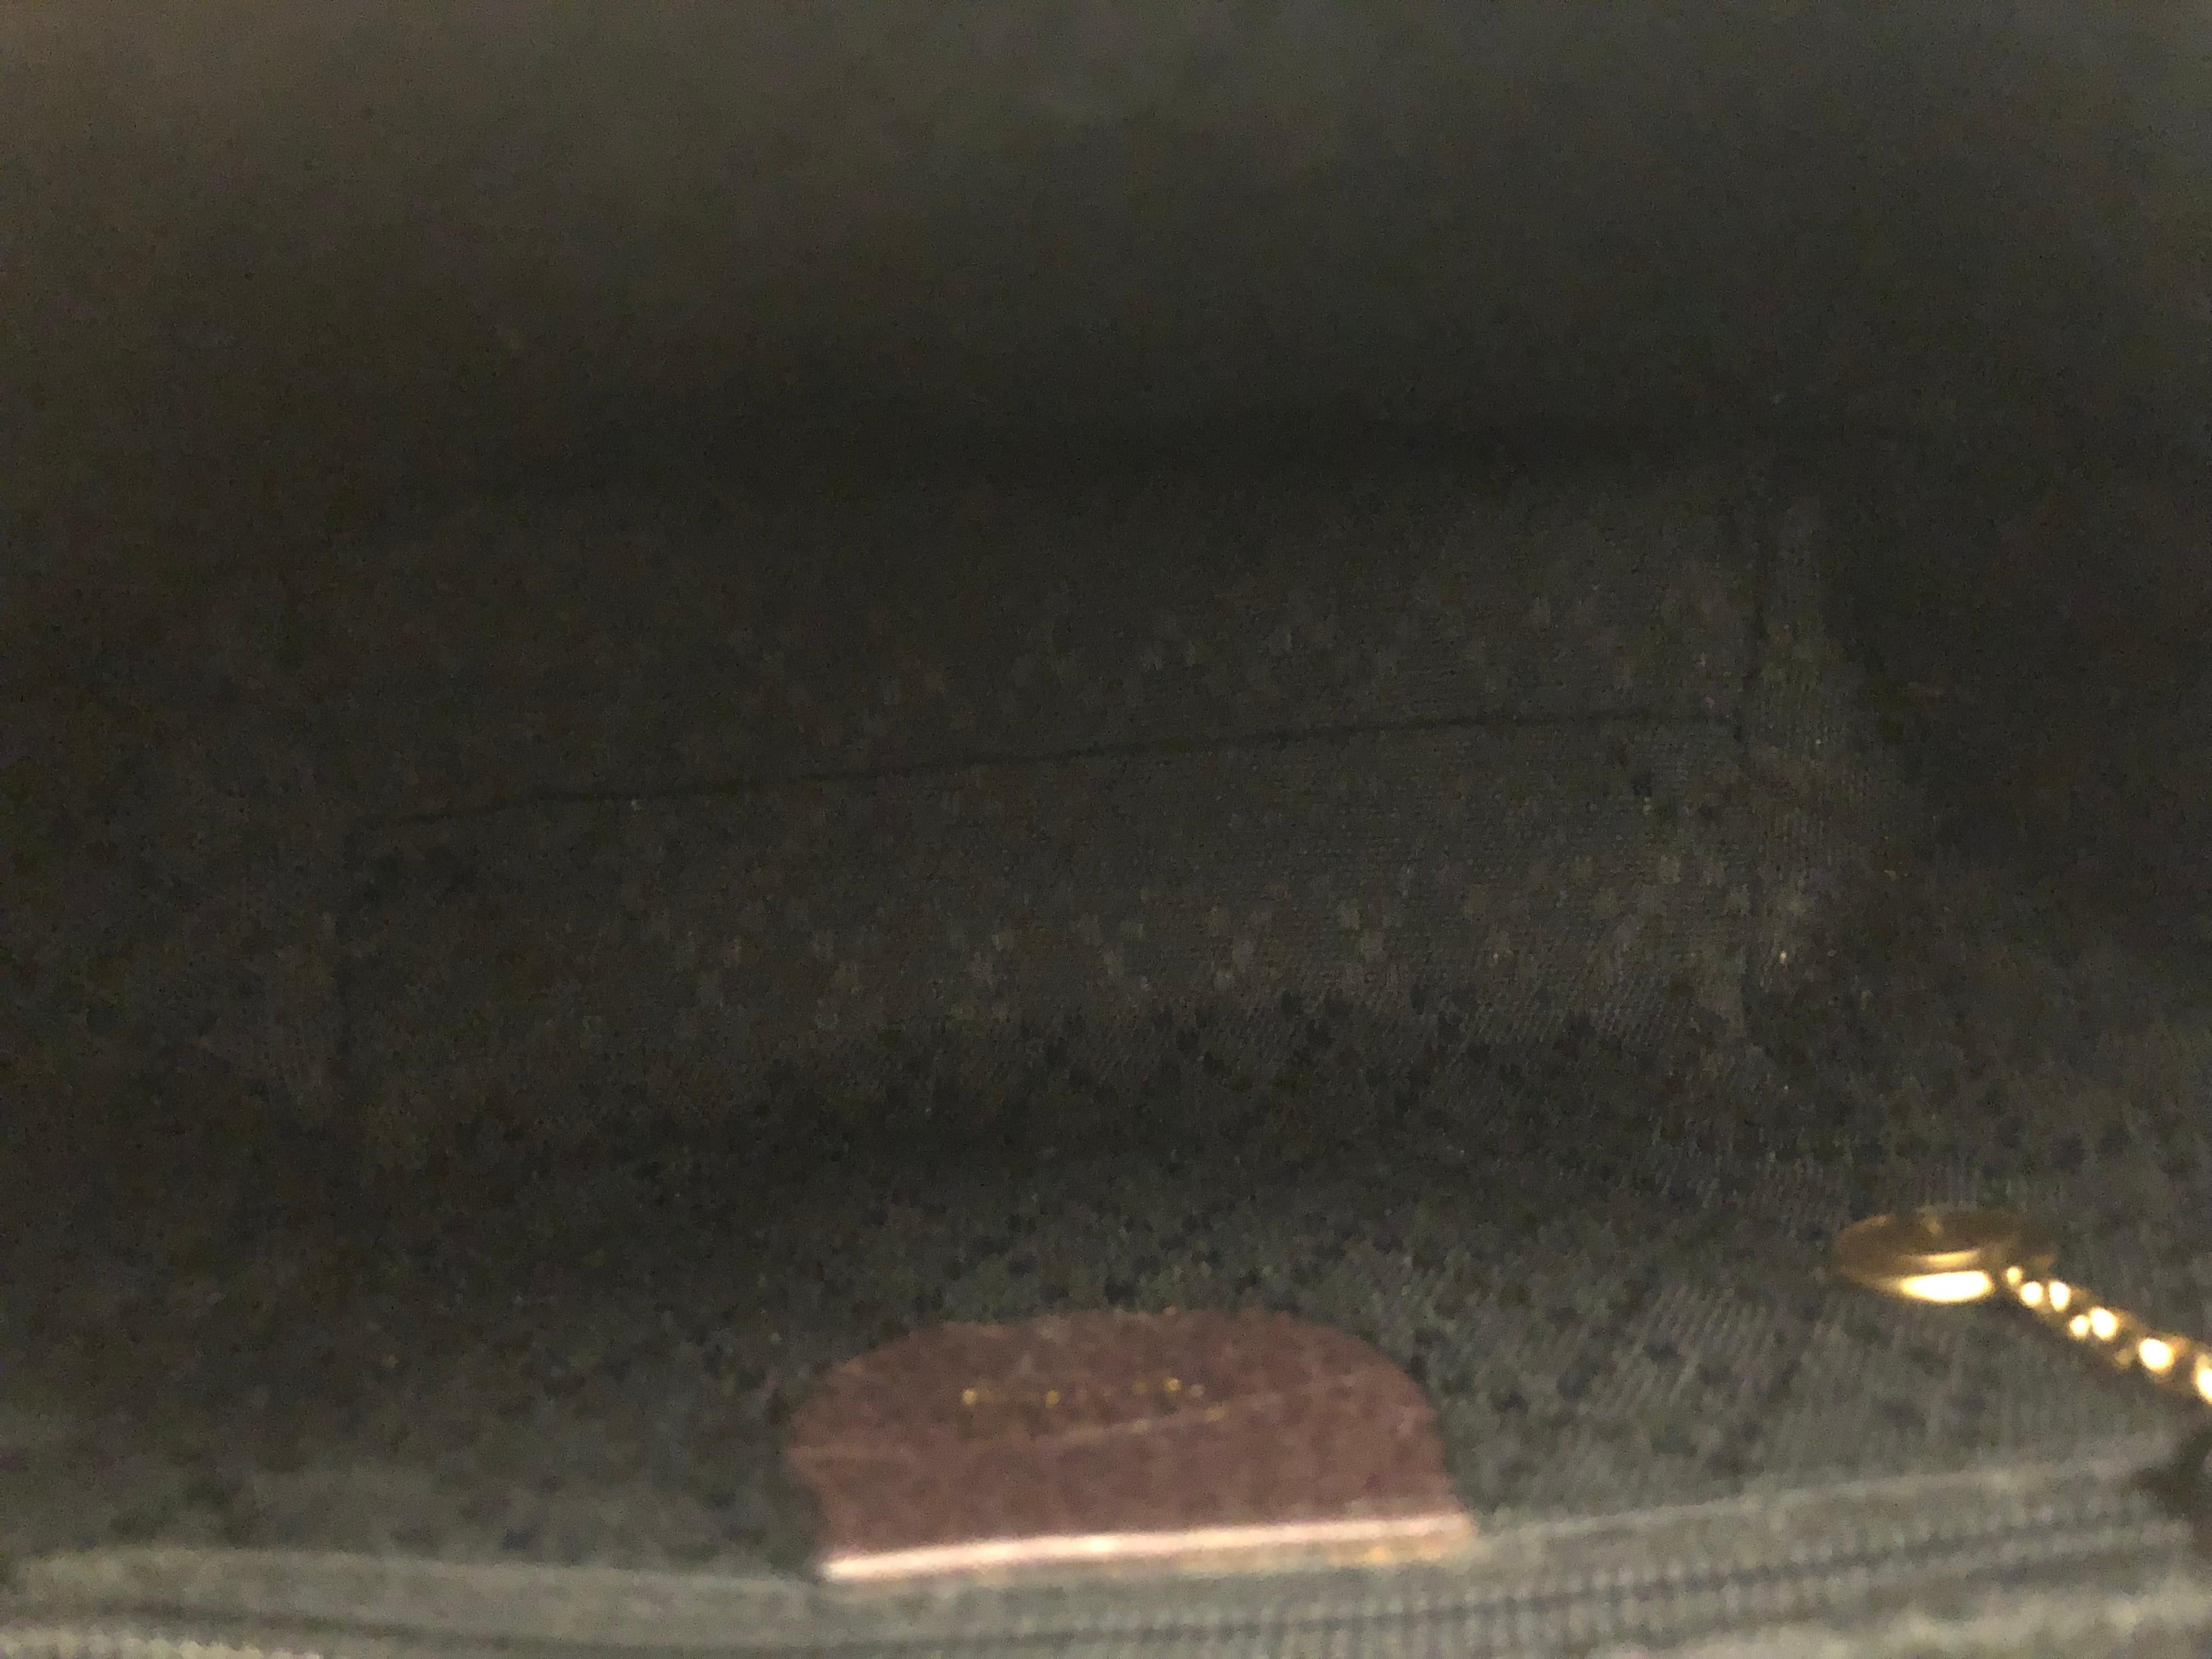 dark brown suede handbag